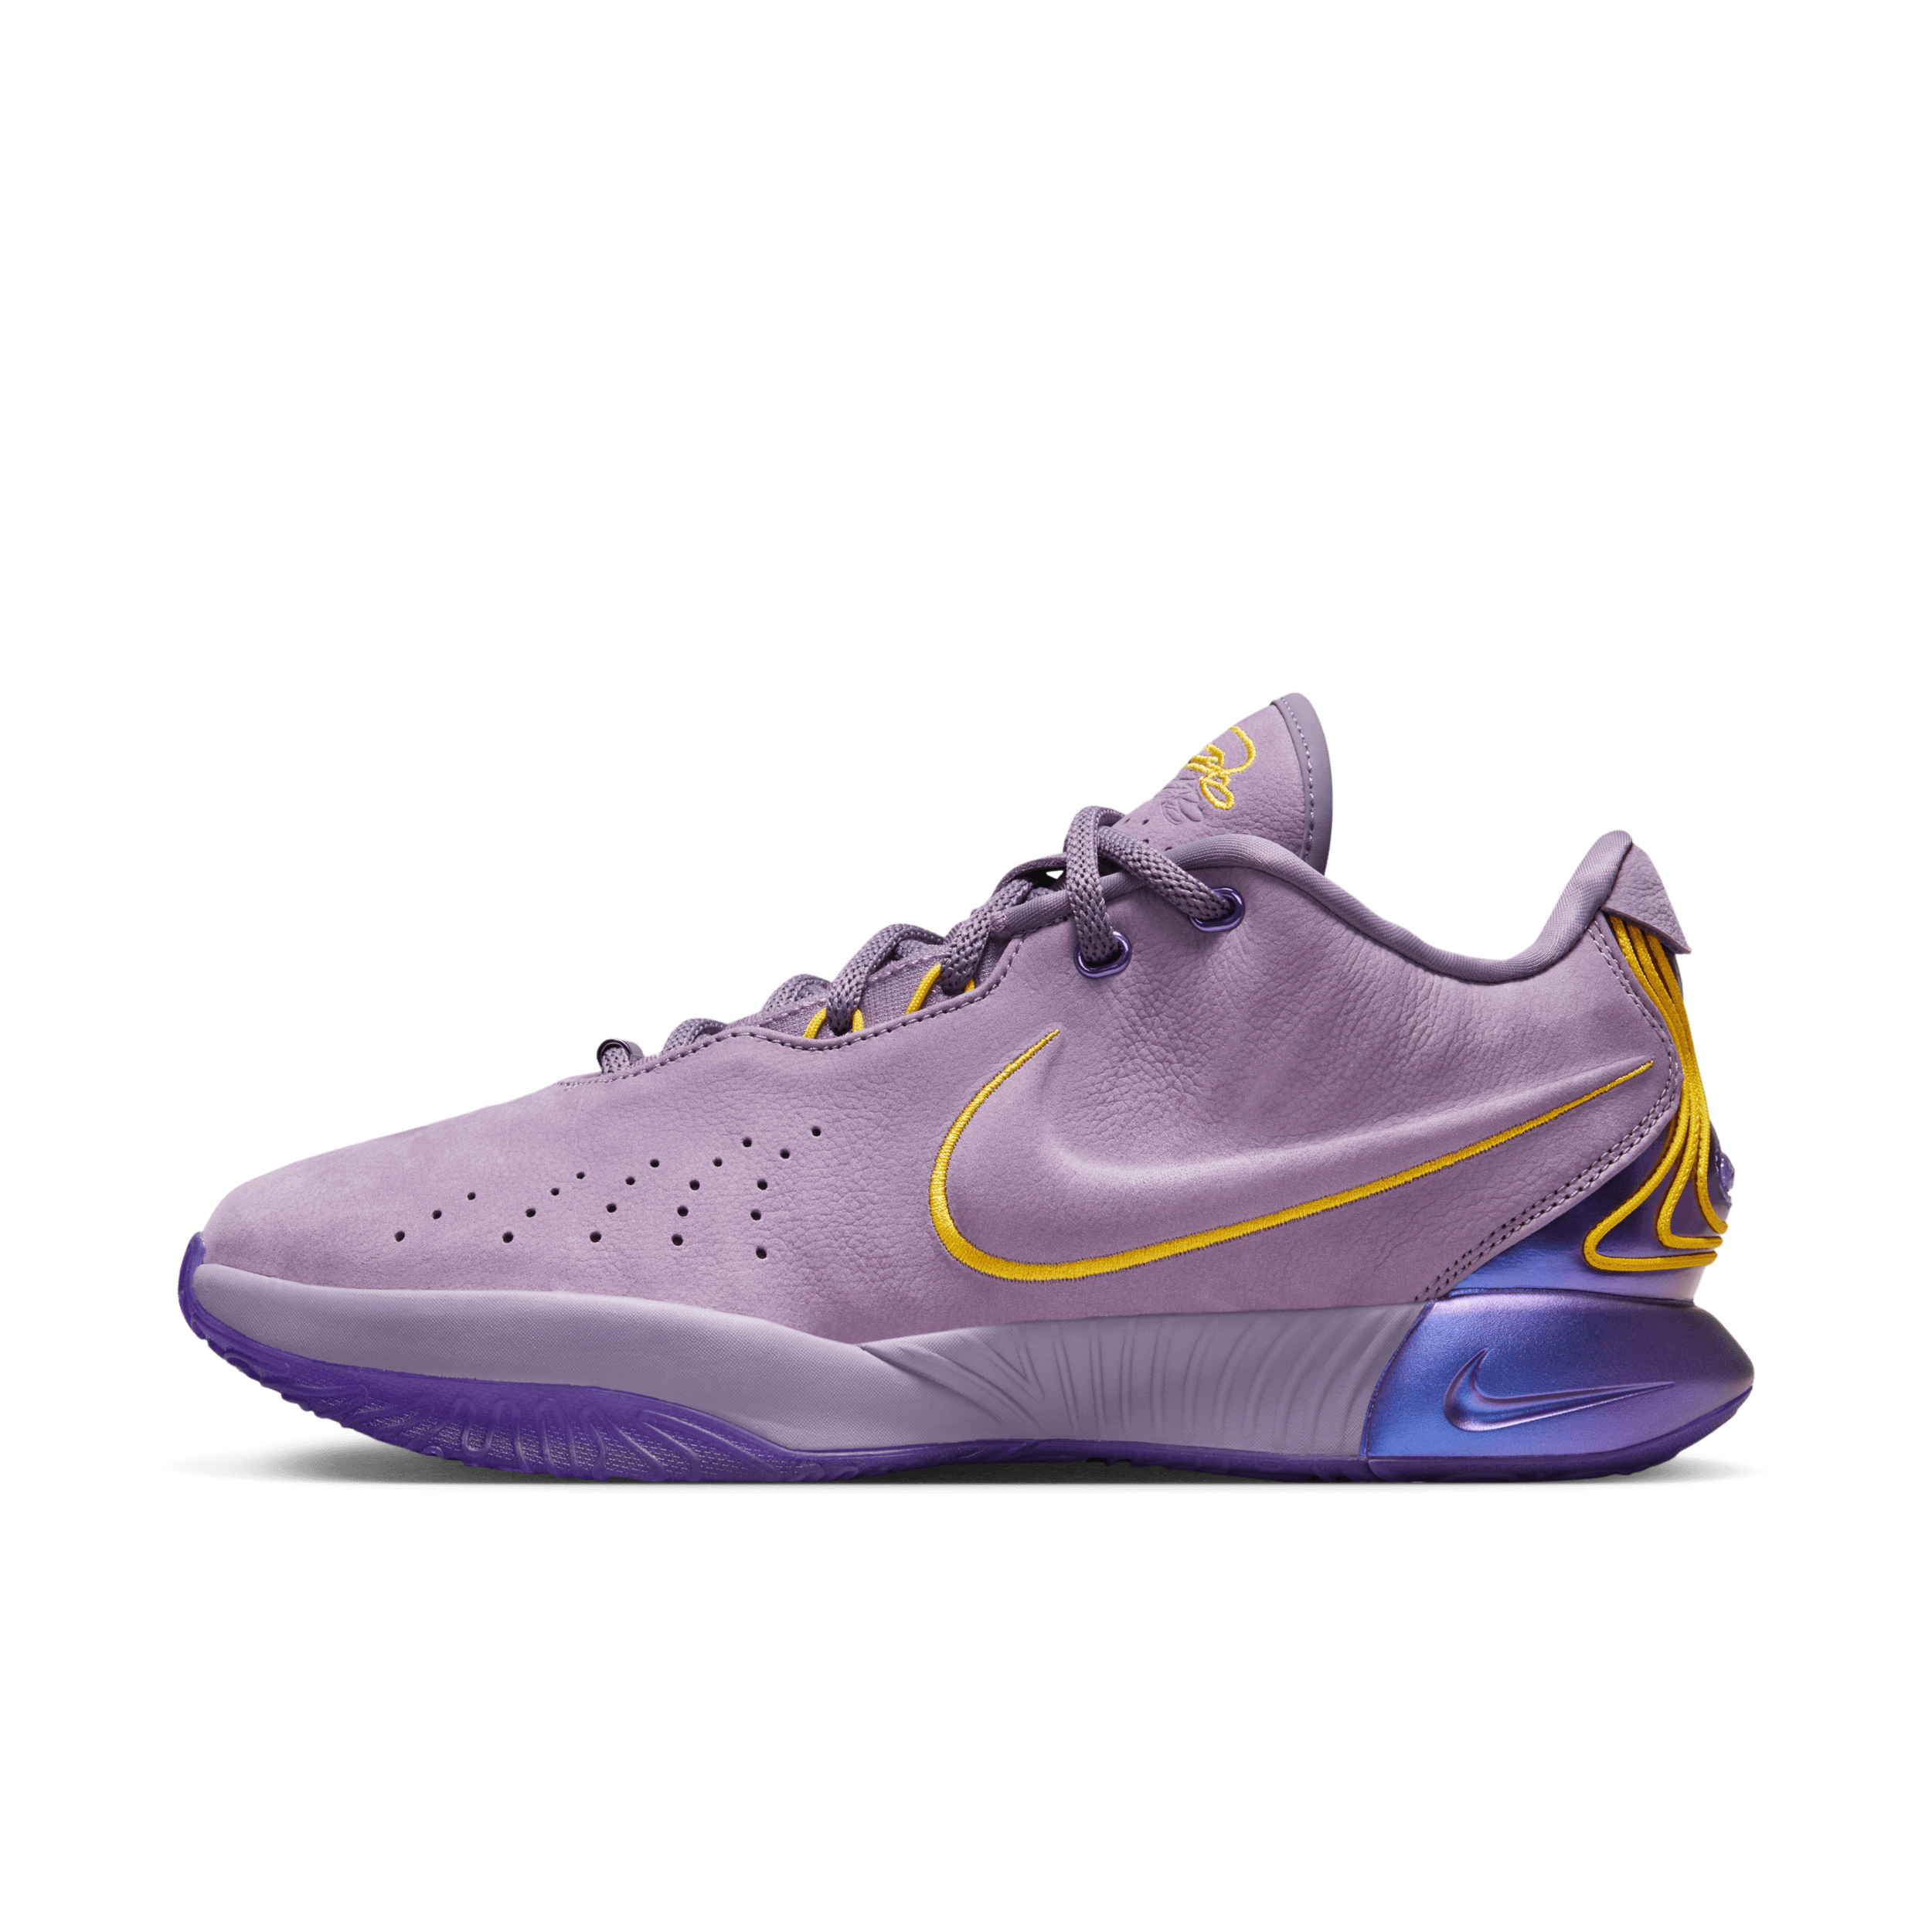 Nike LeBron XXI 'Freshwater' basketbalschoenen - Paars